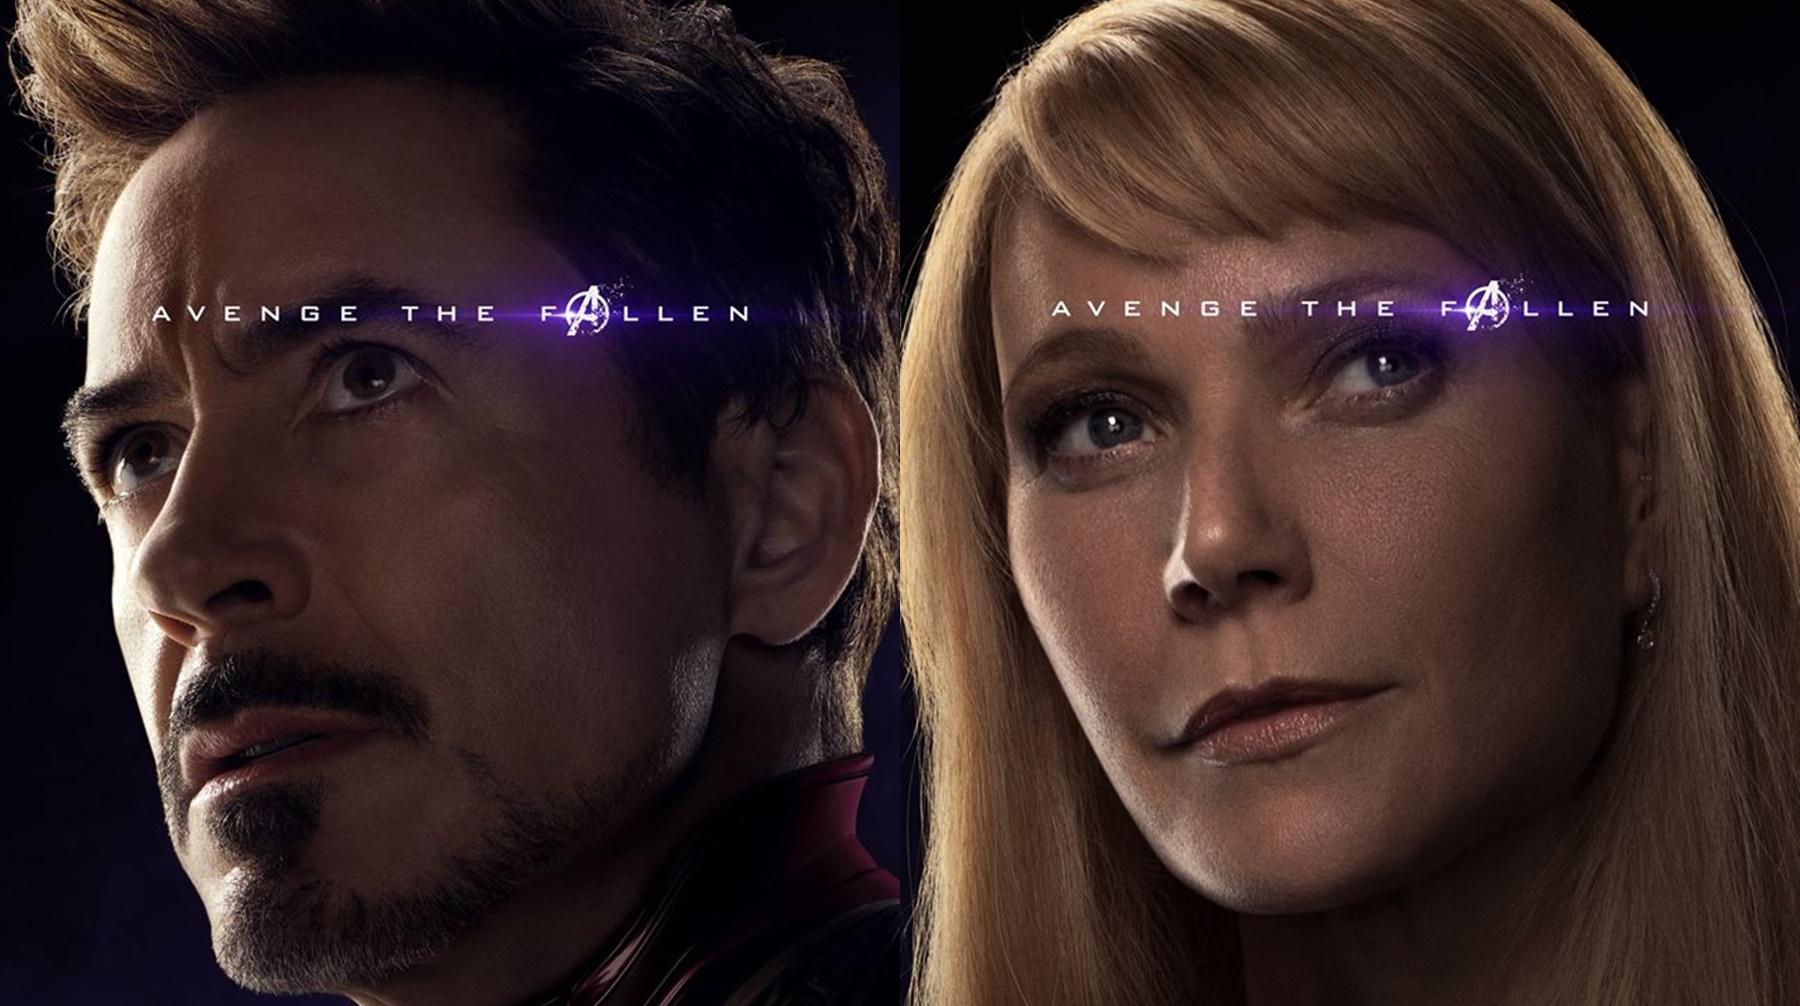 "Avengers: Endgame" mostró nuevos pósters en los que confirmar que Pepper Potts sobrevivió al chasquido de Thanos. Fotos: MCU.